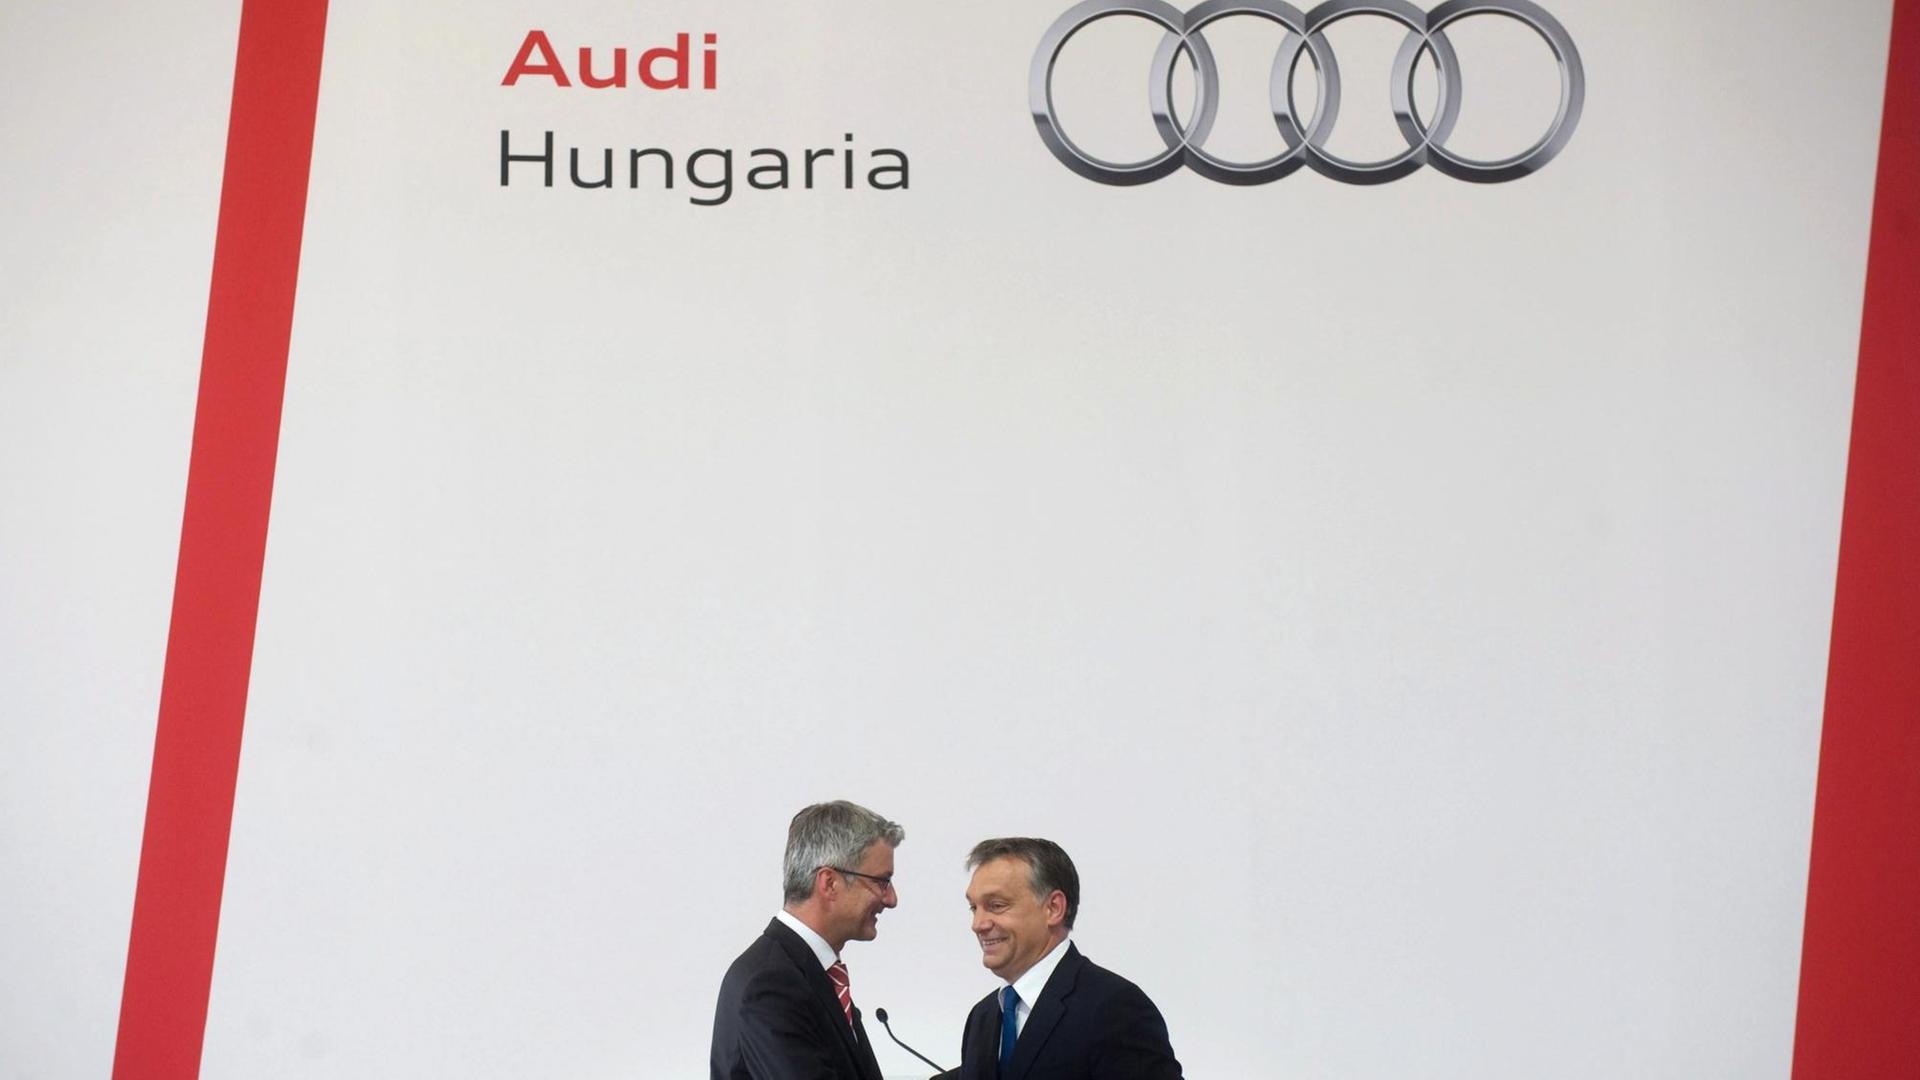 2013: Ungarns Premierminister Viktor Orban und Rupert Stadler, damals Vorstandsvorsitzender der Audi AG, geben gemeinsam Startschuss für ein Audi-Projekt in Ungarn